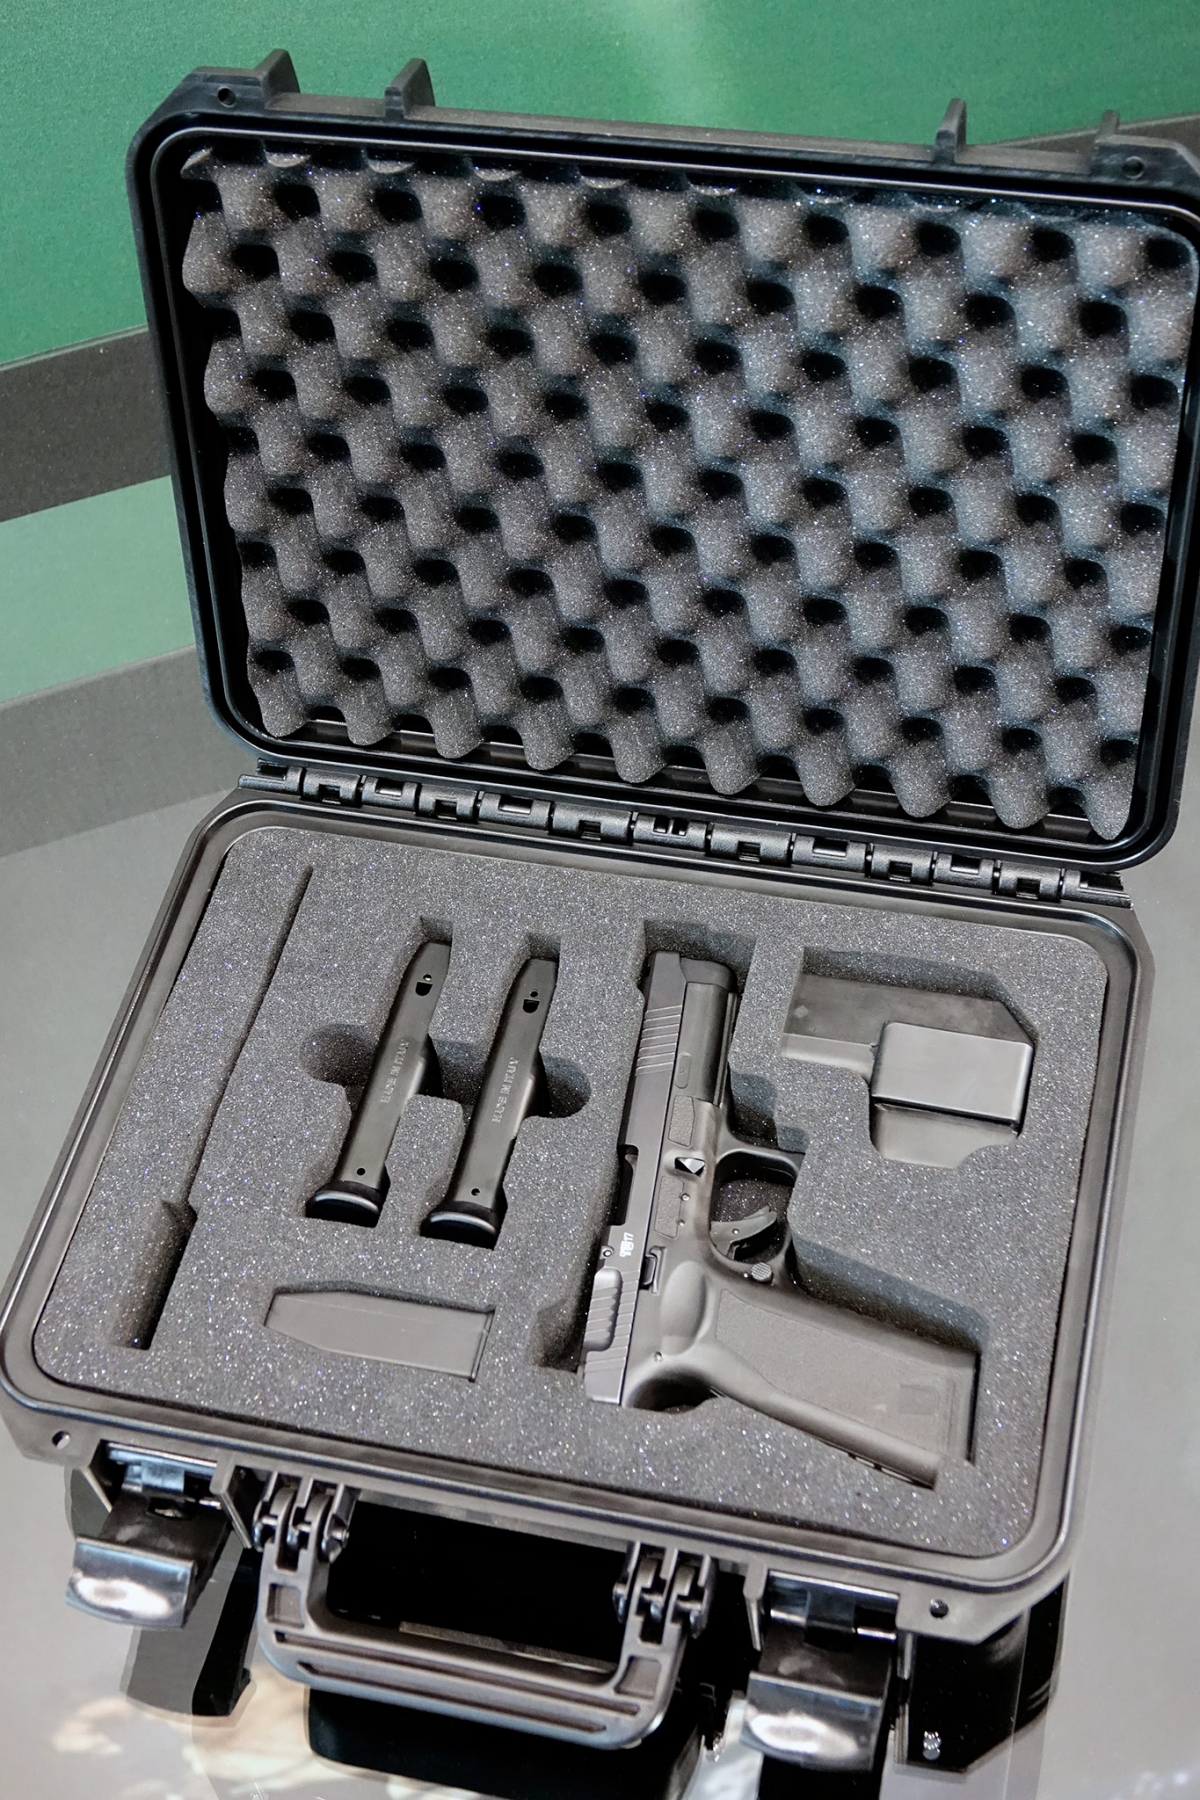 La pistola Czech Small Arms Vz.15 nella sua valigetta, con l'intera dotazione: due caricatori, carichino, kit di pulizia e fondina dedicata